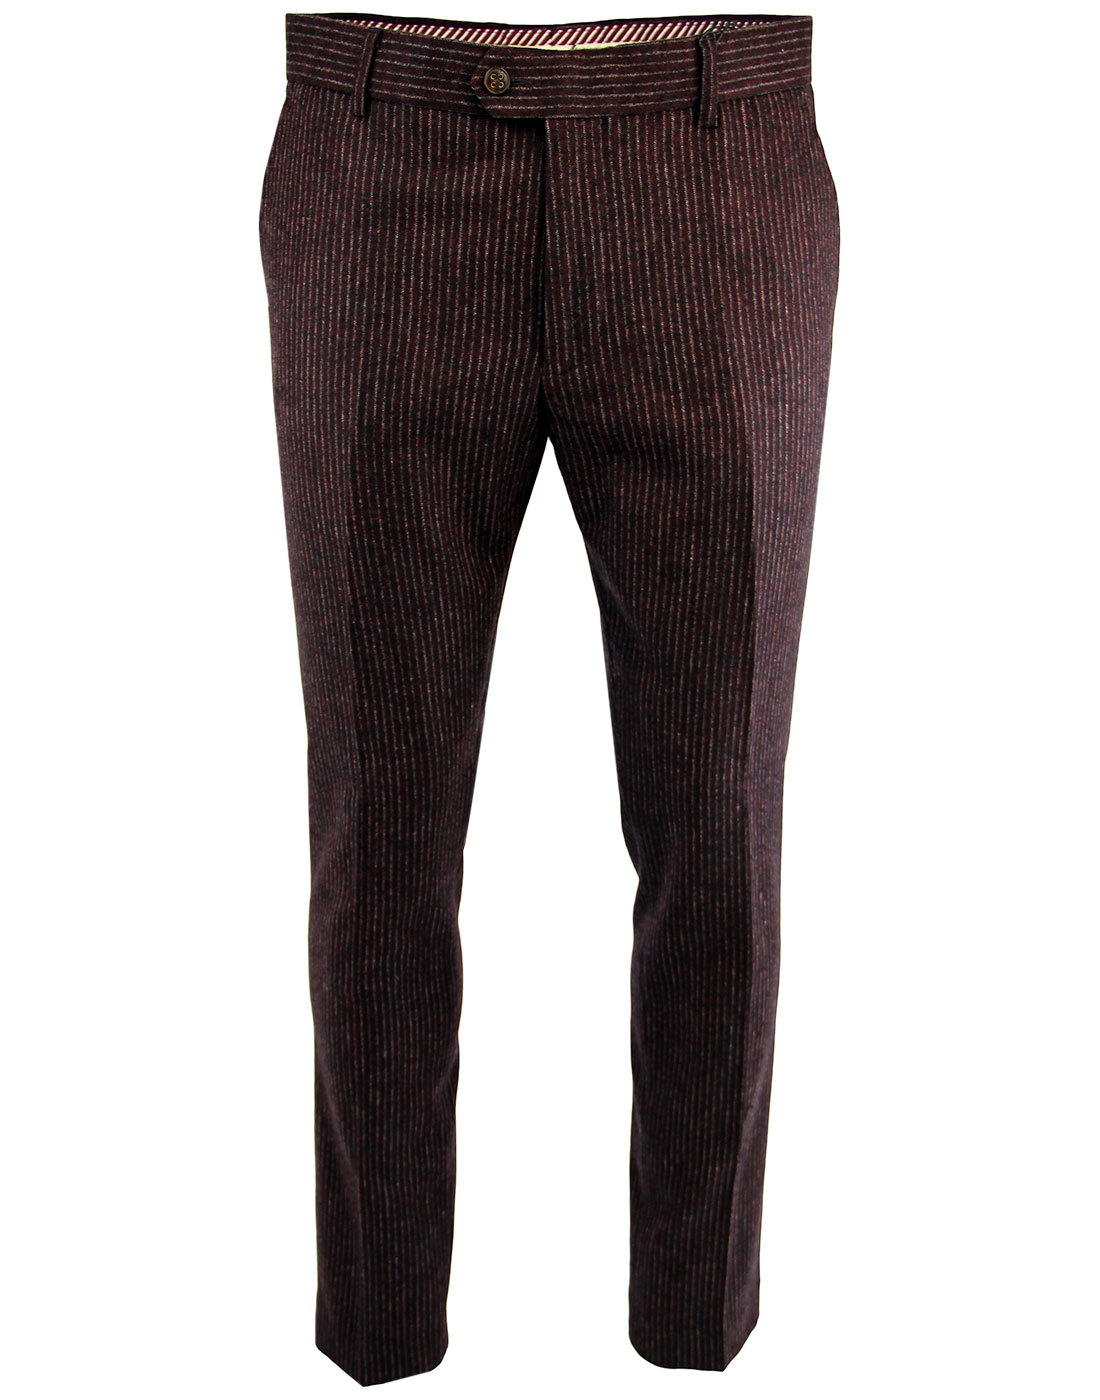 GABICCI VINTAGE 1960s Mod Pinstripe Suit Trousers